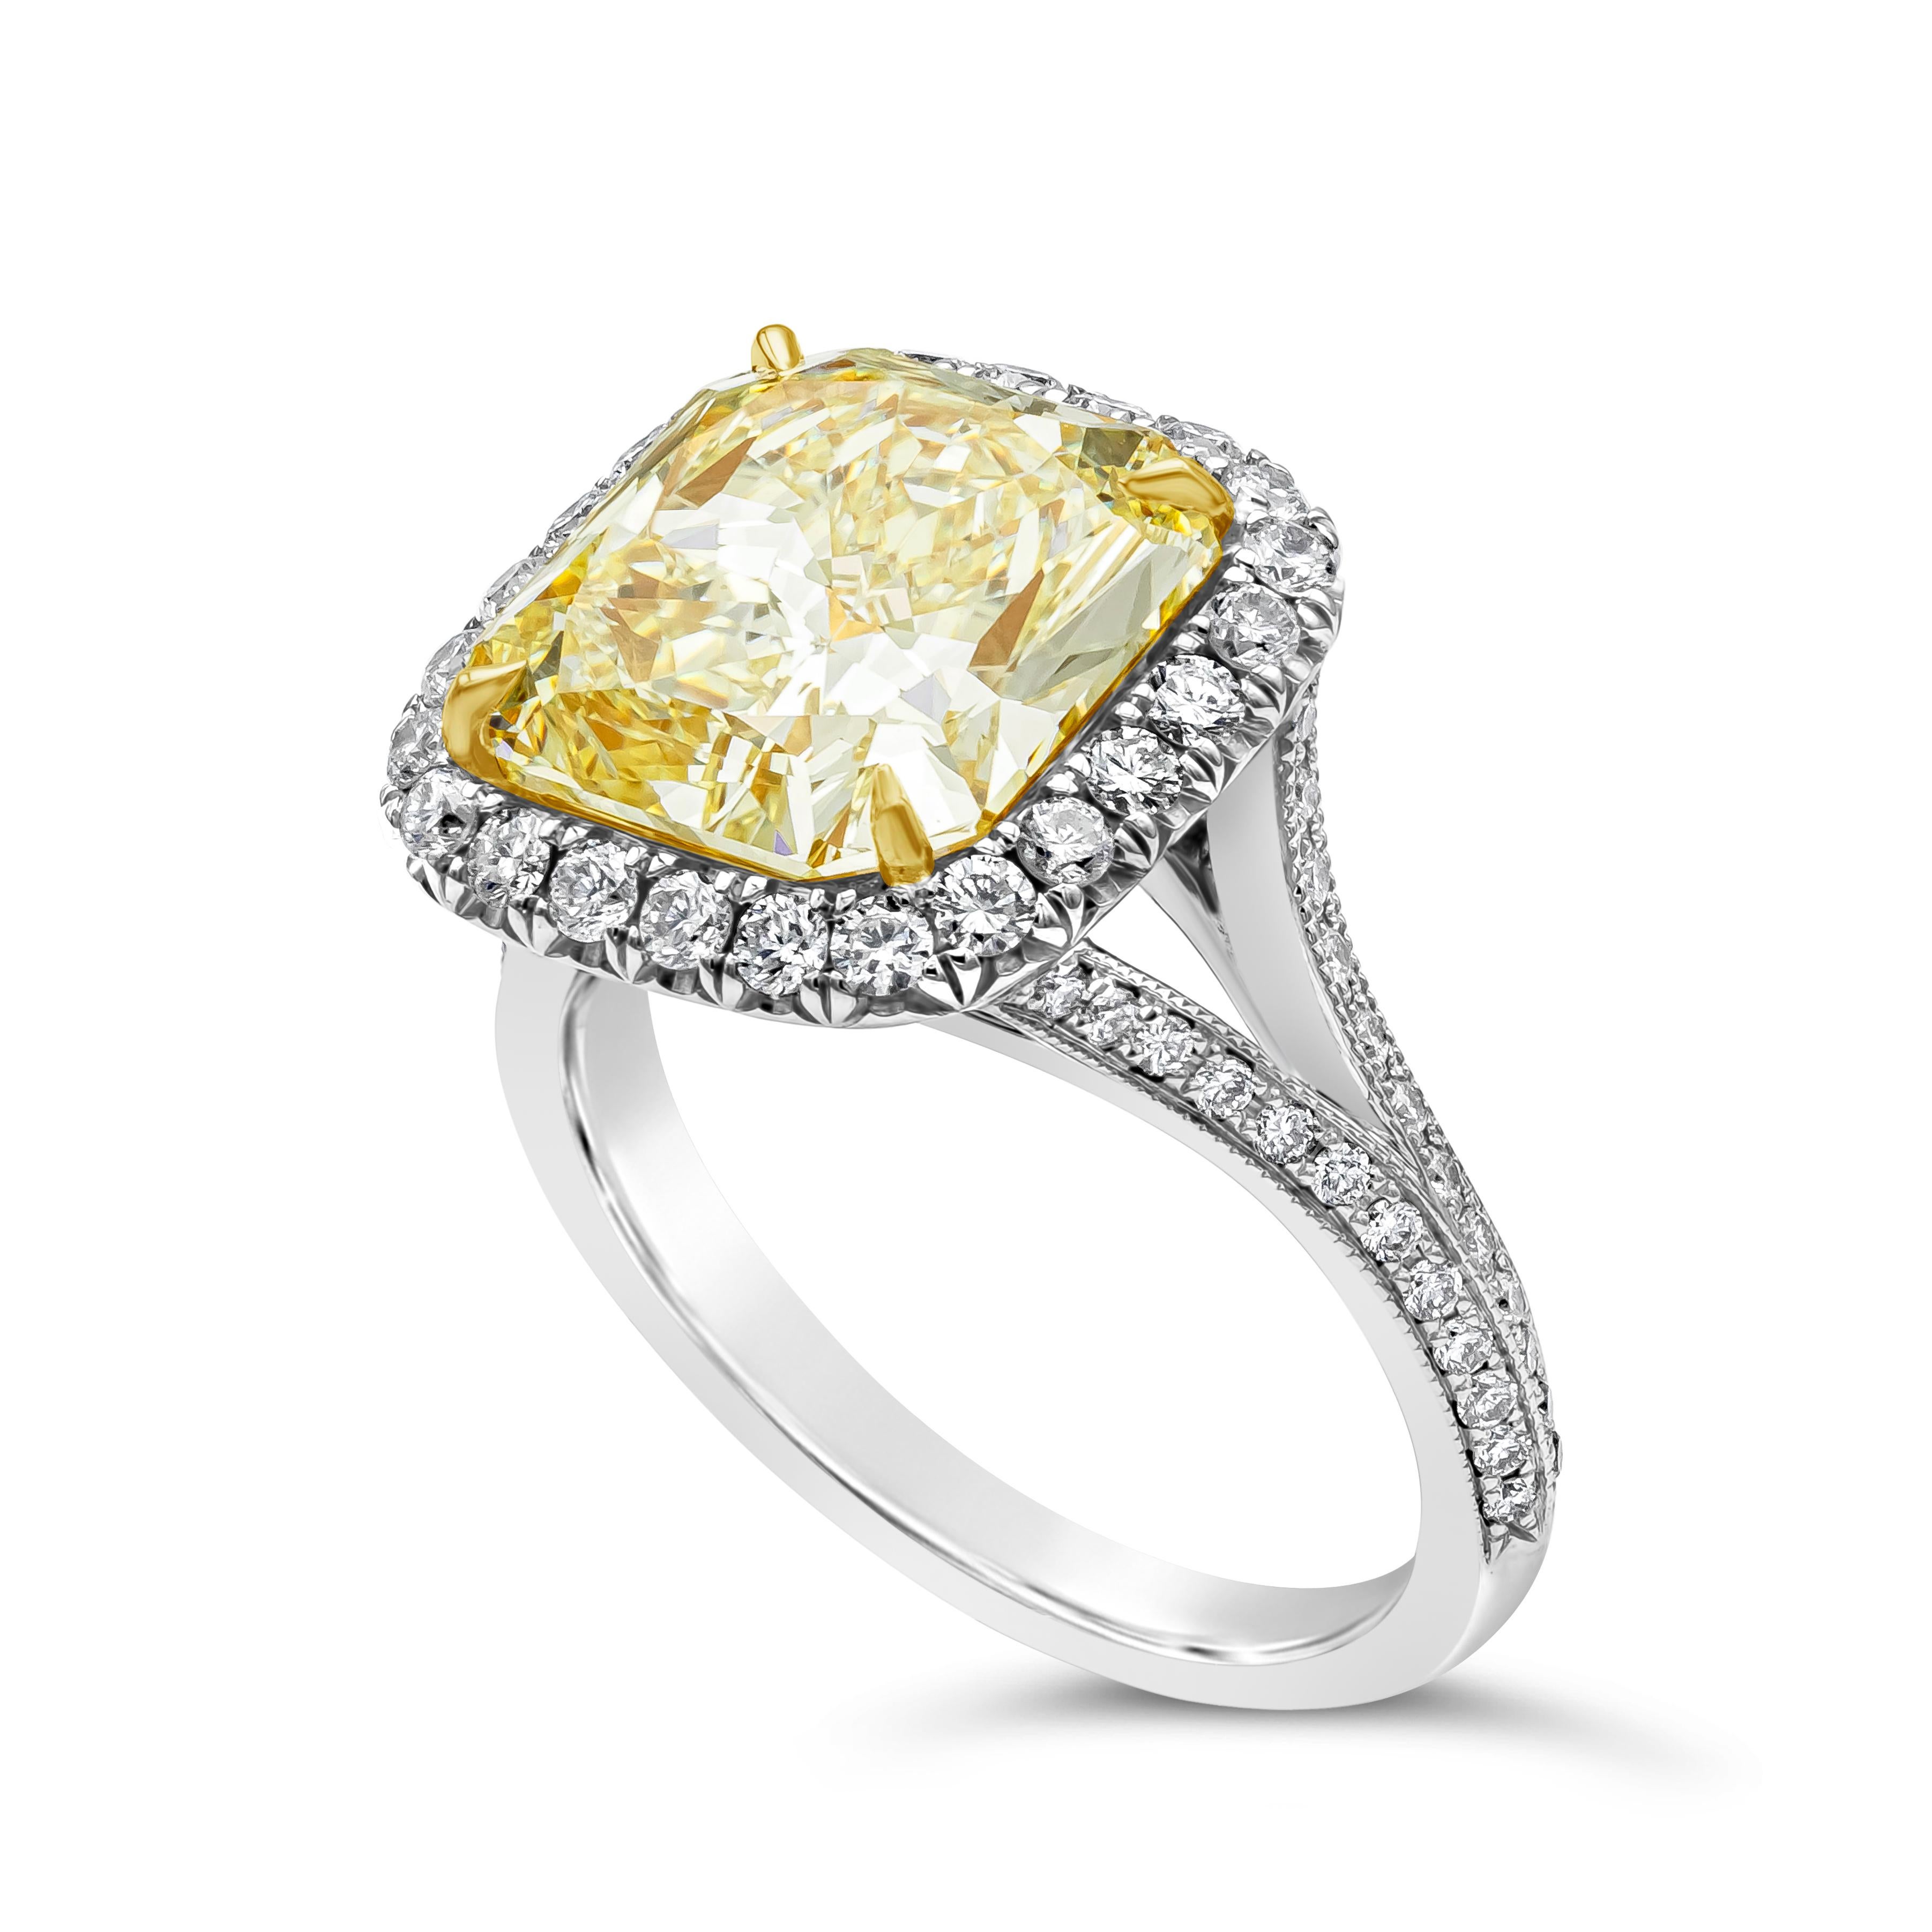 Mit einem GIA-zertifizierten farbigen gelben Diamanten im Brillantschliff mit einem Gewicht von 5,32 Karat und einer Reinheit von VS1. In einer vierzackigen Fassung aus Gelbgold. Umgeben von einer einzigen Reihe runder Brillanten mit einem